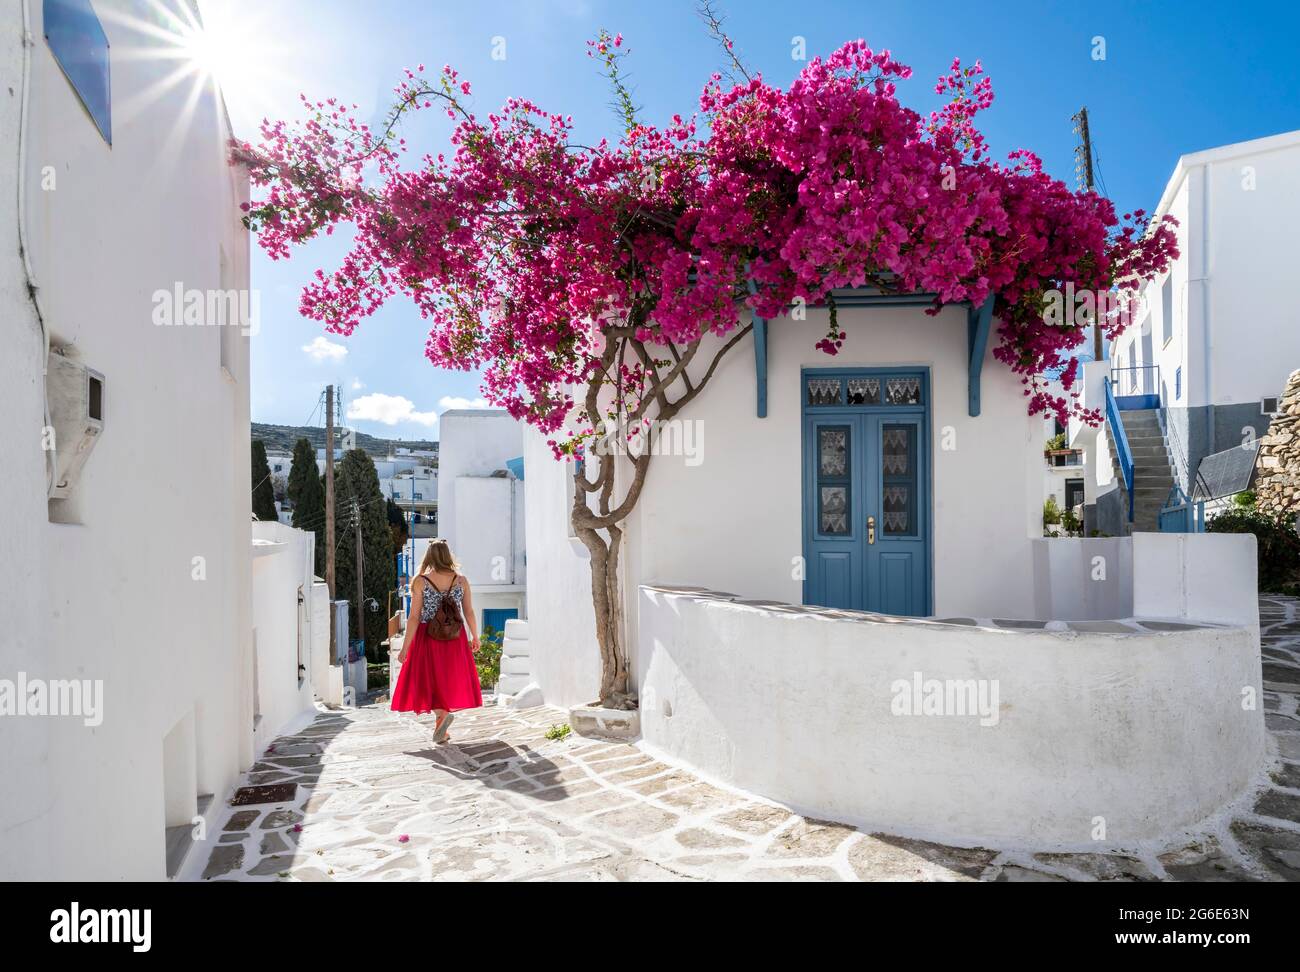 Maisons blanches-bleues avec bougainvillea pourpre en fleurs (Bougainvillea), Jeune femme à la robe rouge dans la vieille ville de Lefkes, Paros, Cyclades, Grèce Banque D'Images